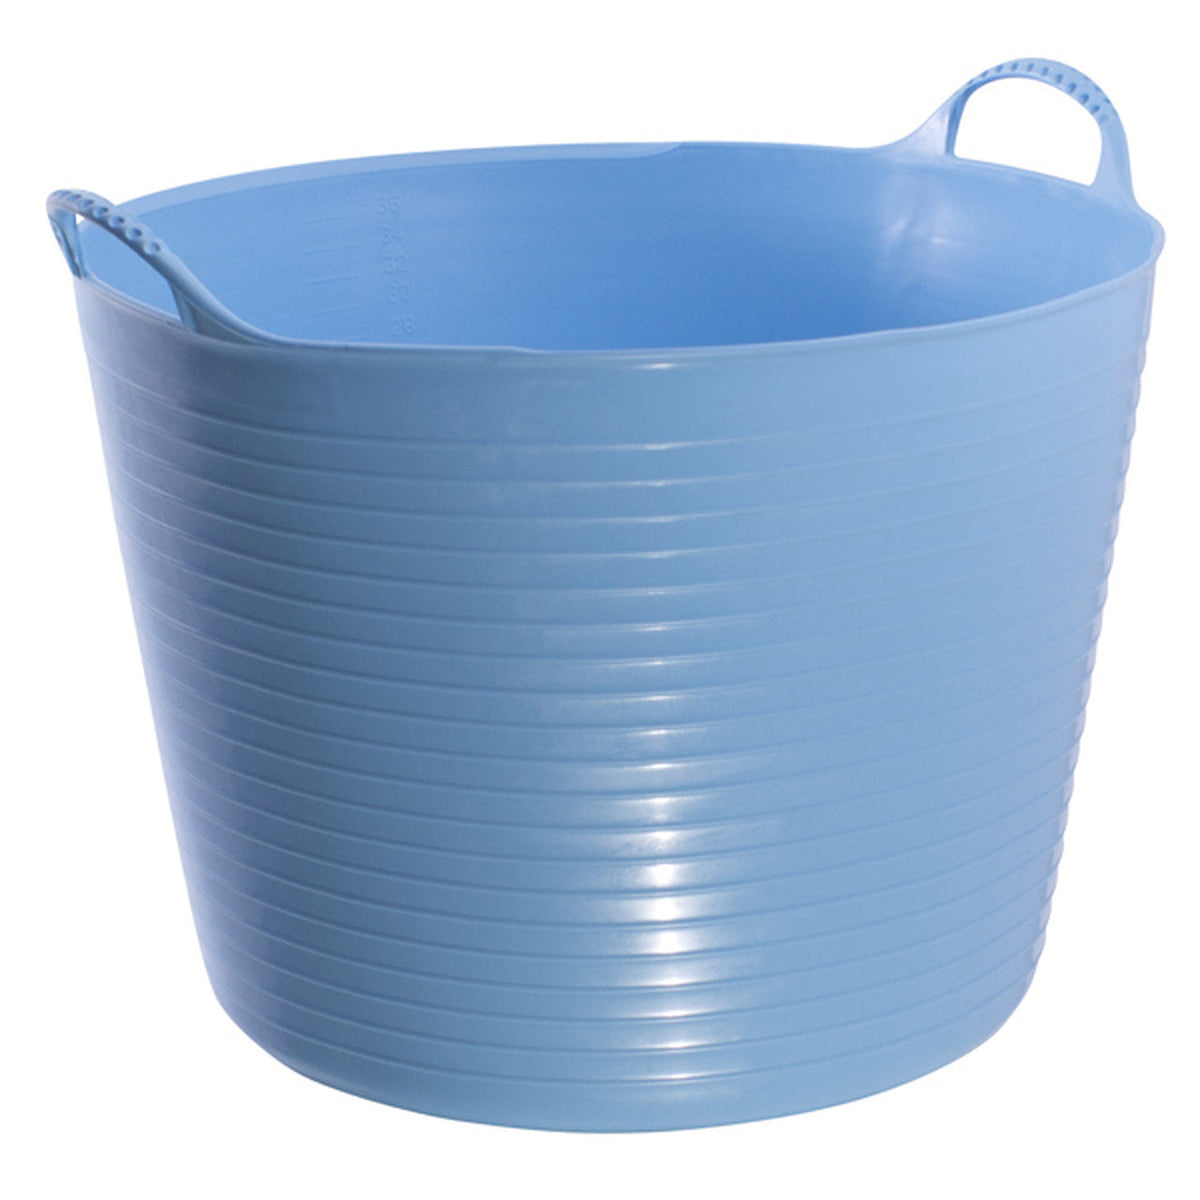 Sky blue bucket